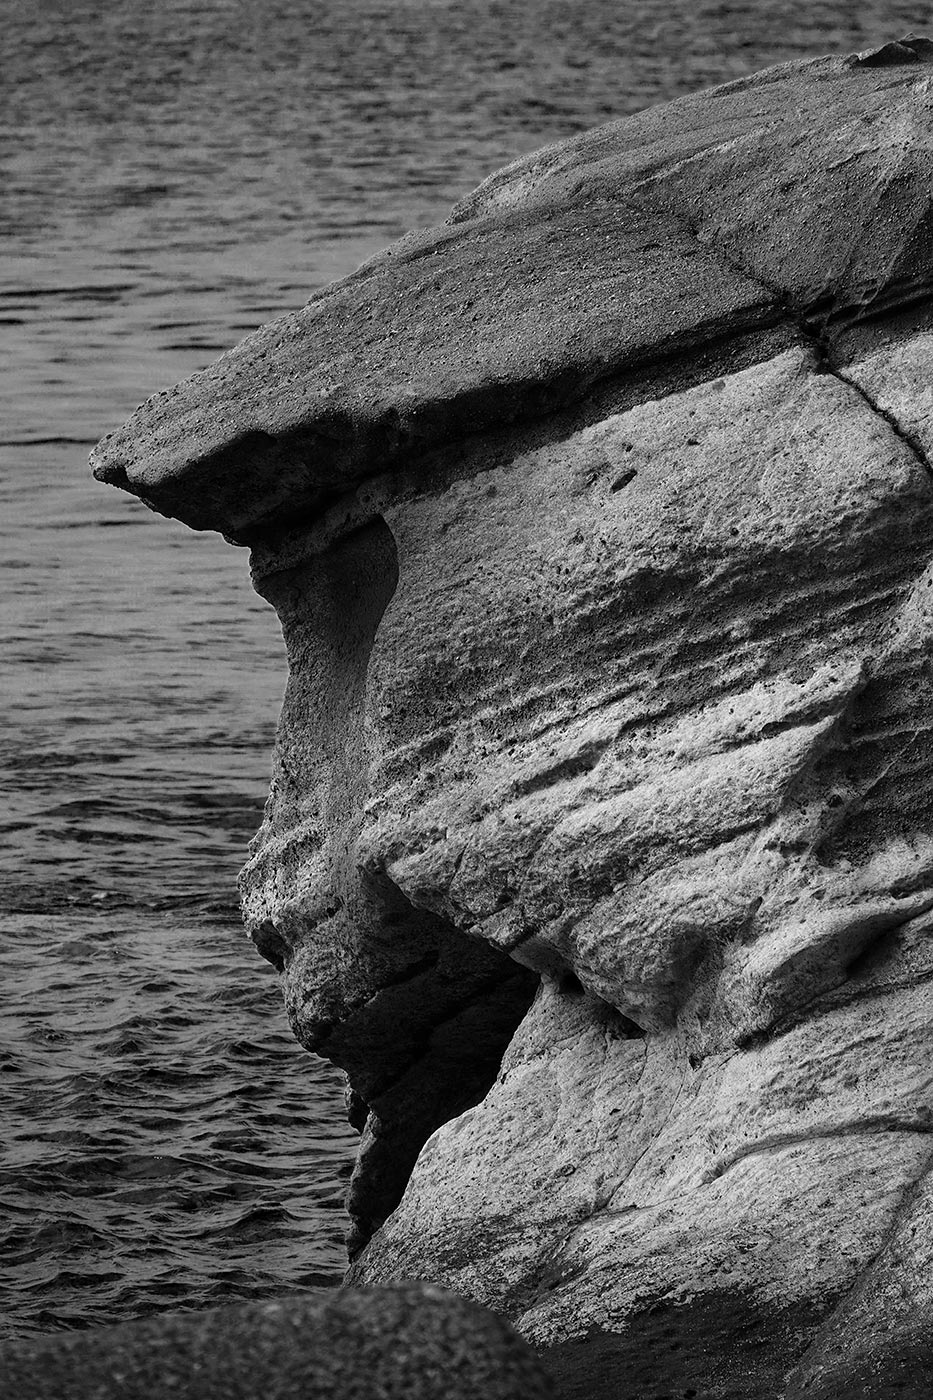 館山の海猿・猿顔石